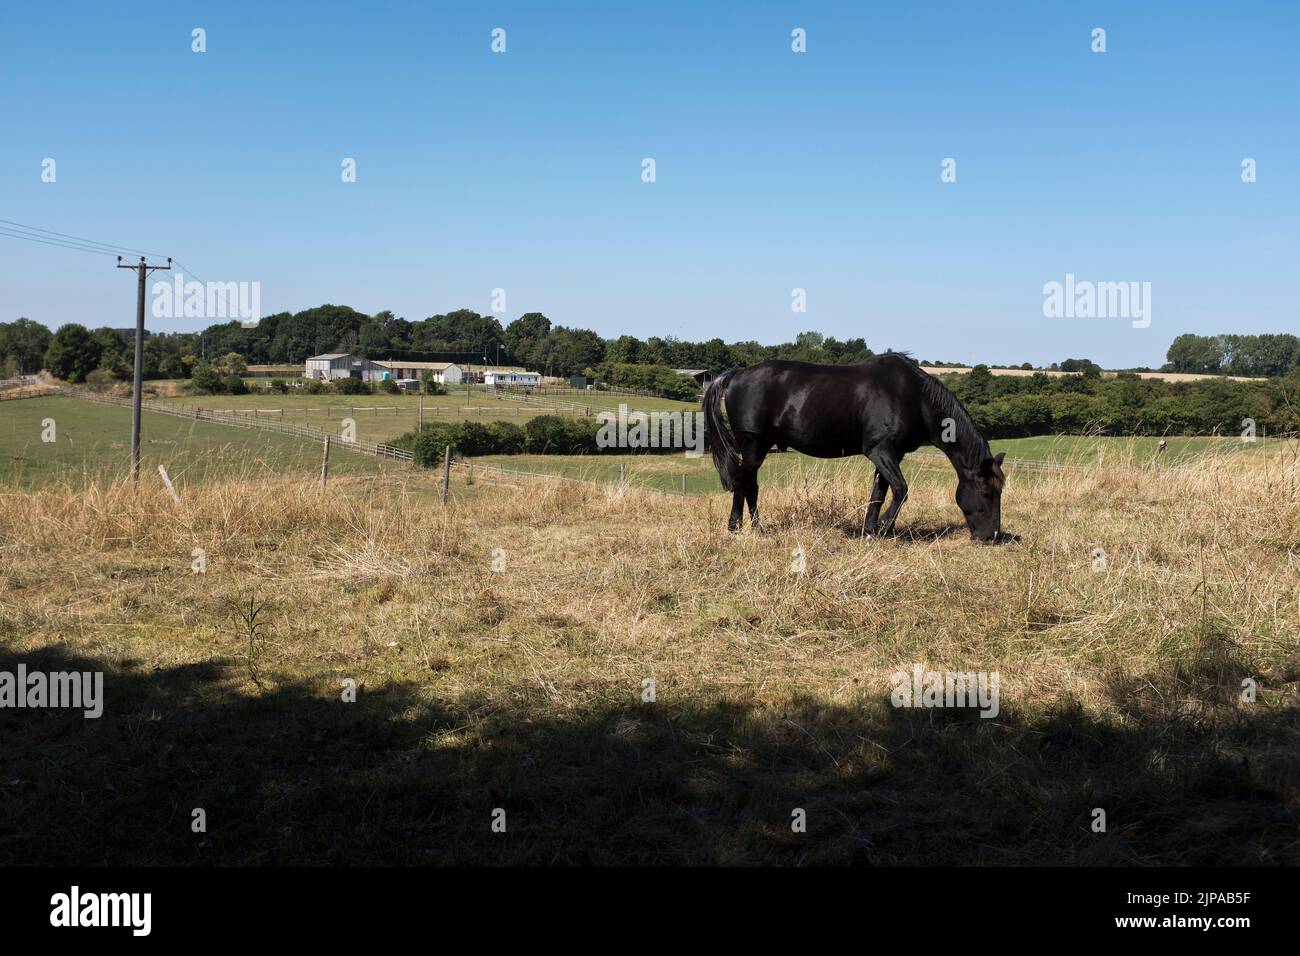 dh chevaux écuries CLIFFORD YORKSHIRE Noir poney de jeunes chevaux en pâturage dans un champ royaume-uni Banque D'Images